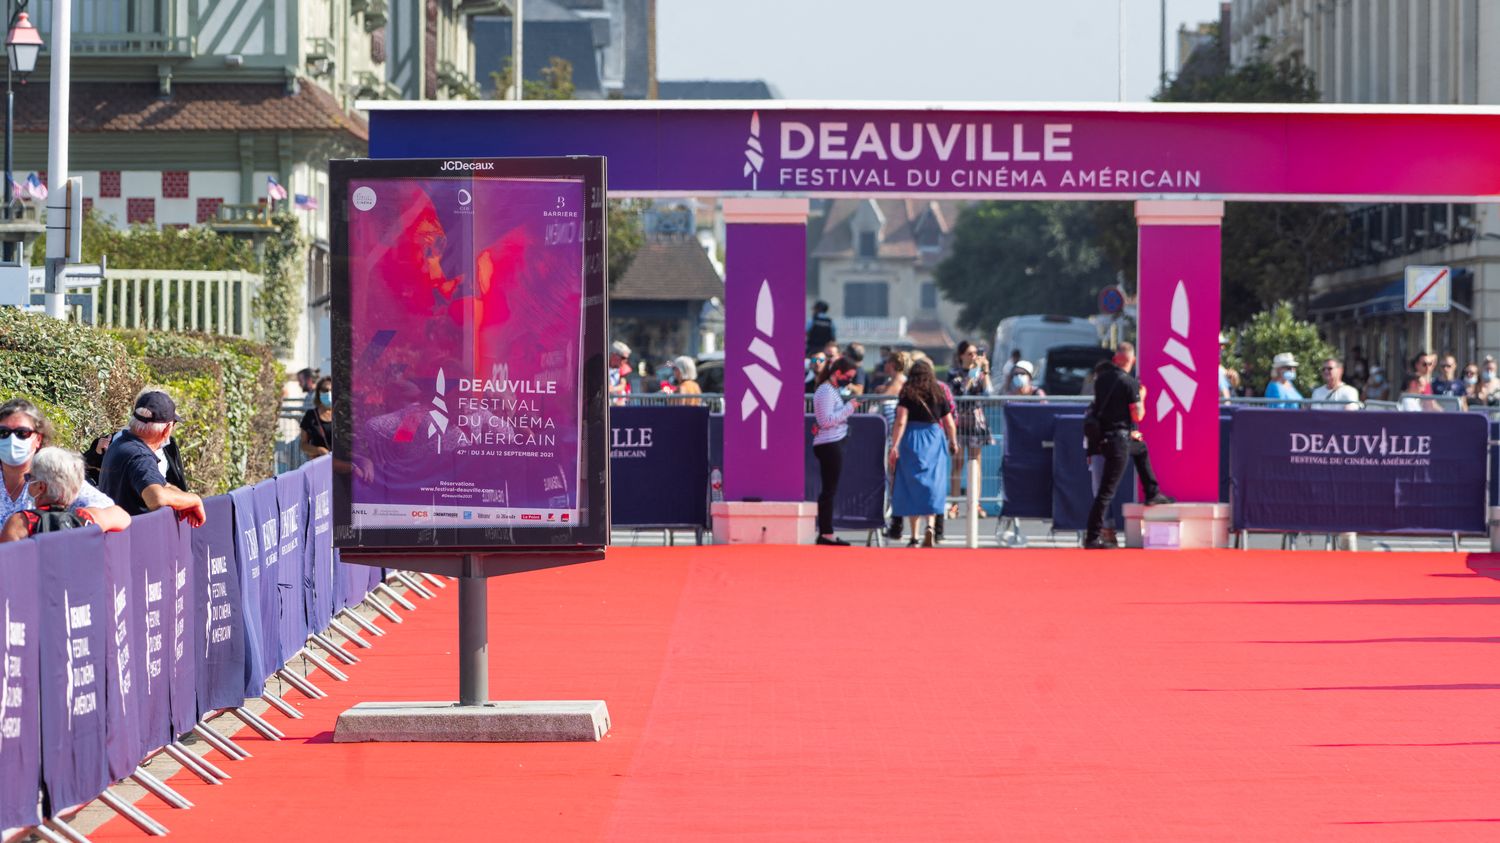 Festival du cinéma américain Deauville: Jury et films de la 49e édition avec Marder, Hands, Yodelice